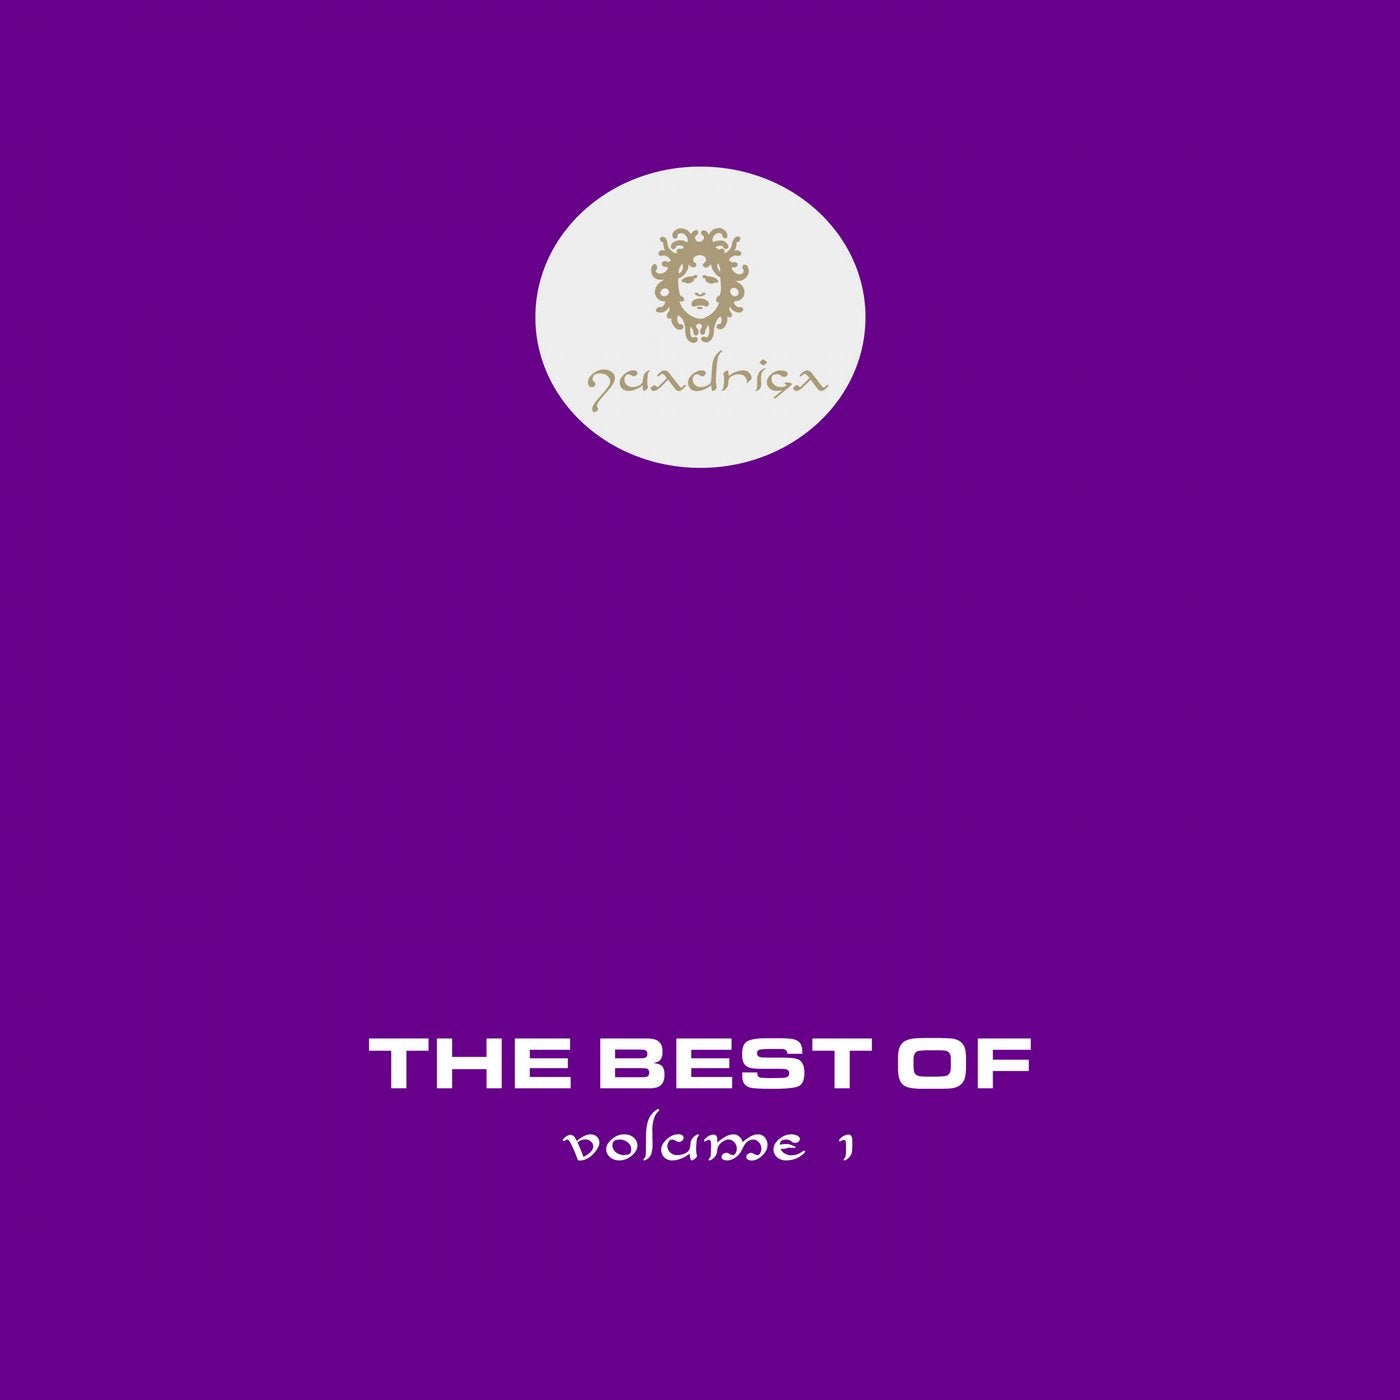 The Best of Quadriga, Vol. 1